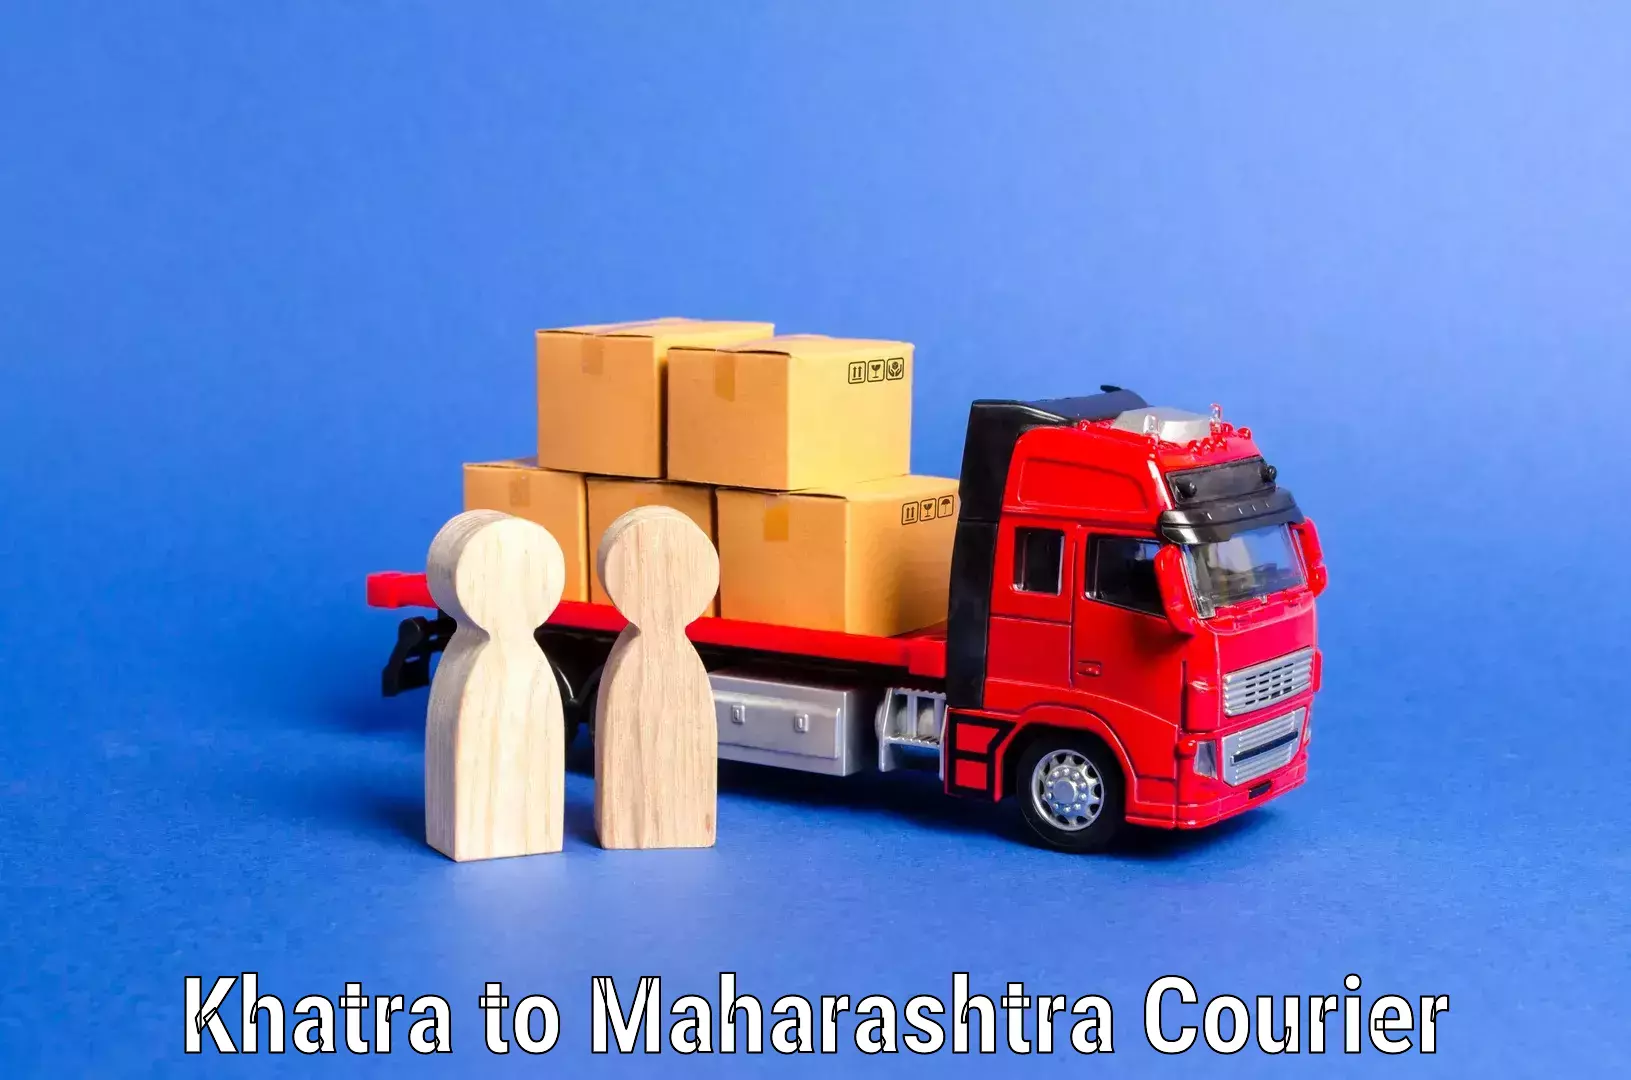 Professional home movers Khatra to Maharashtra